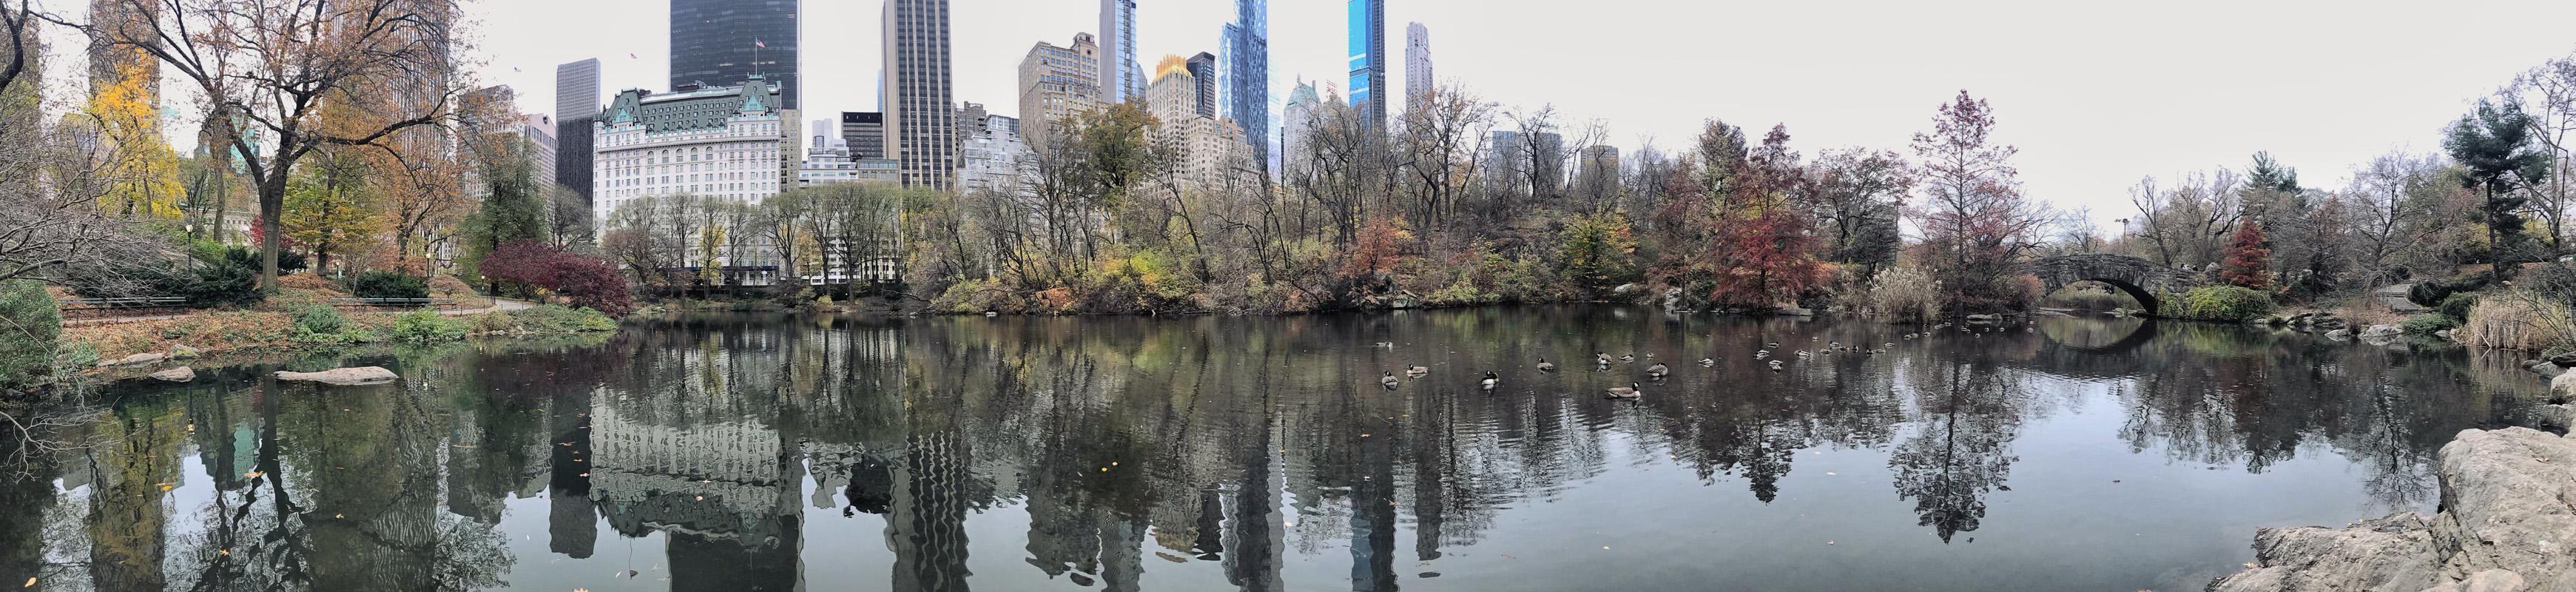 "Der Teich im Central Park, NYC"  Stadtfotografie von Allen Singer
Archivalischer Pigmentdruck auf Kunstdruckpapier für Museen

Auflage von 7
Inklusive Echtheitszertifikat. Vom Künstler signiert und nummeriert.

Druck in Sondergröße auf Anfrage